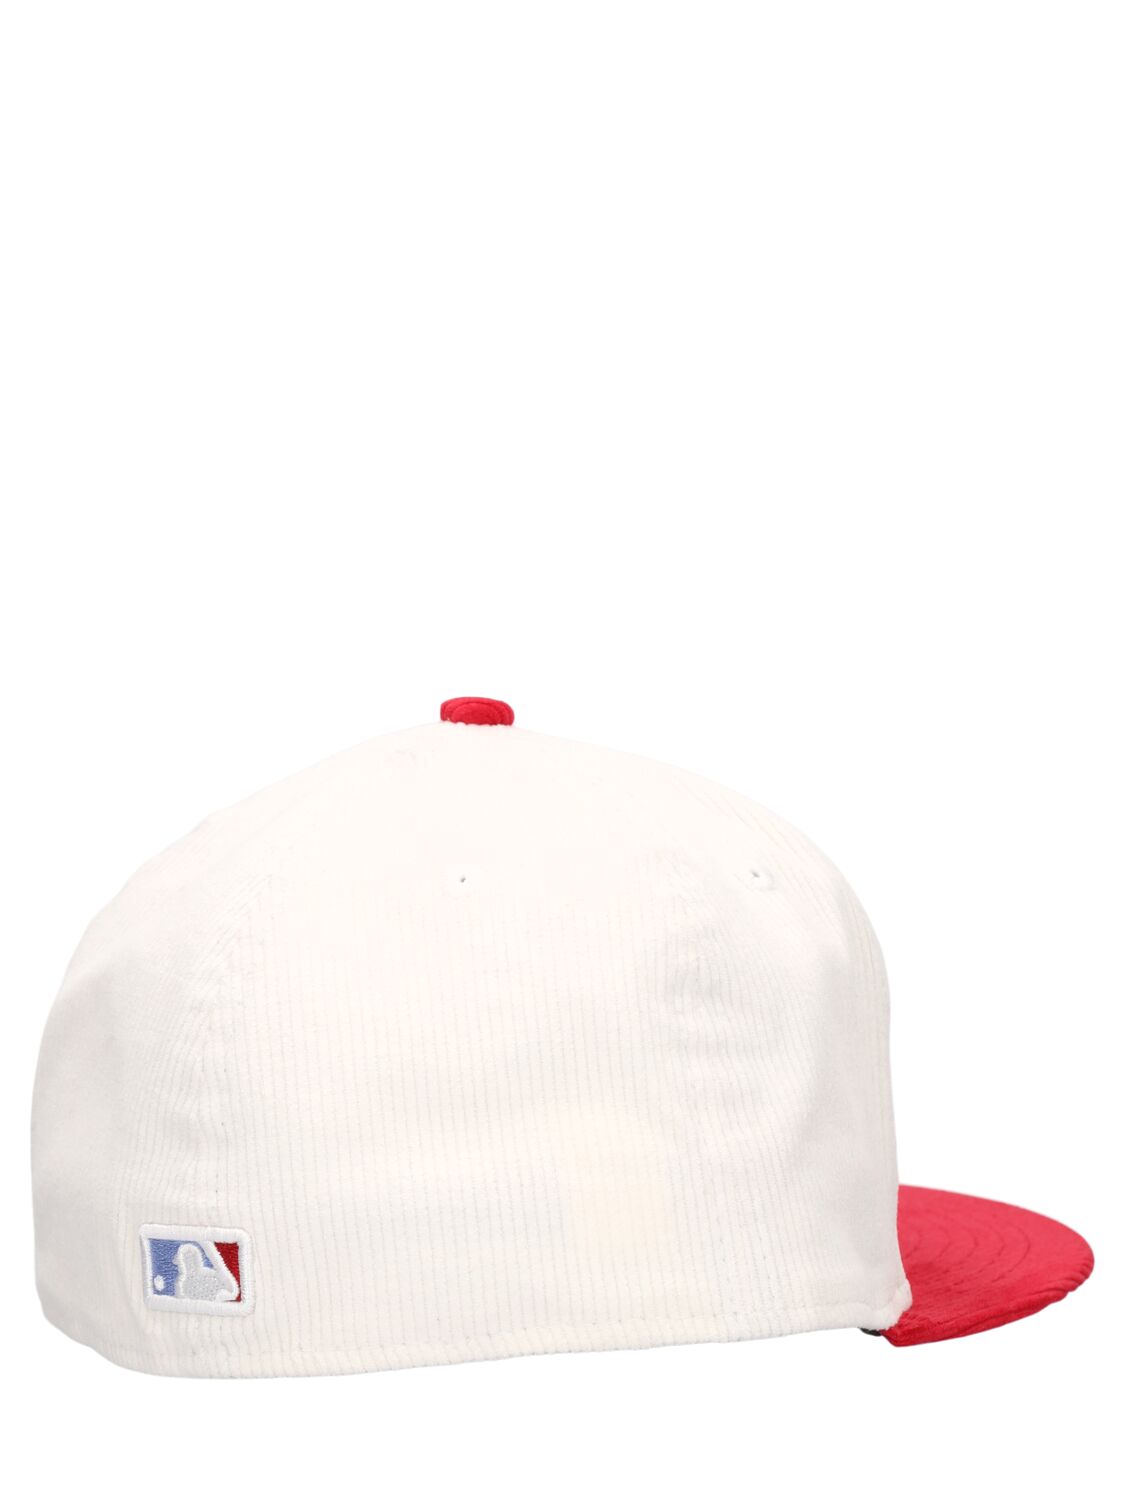 NY YANKEES 59FIFTY棒球帽